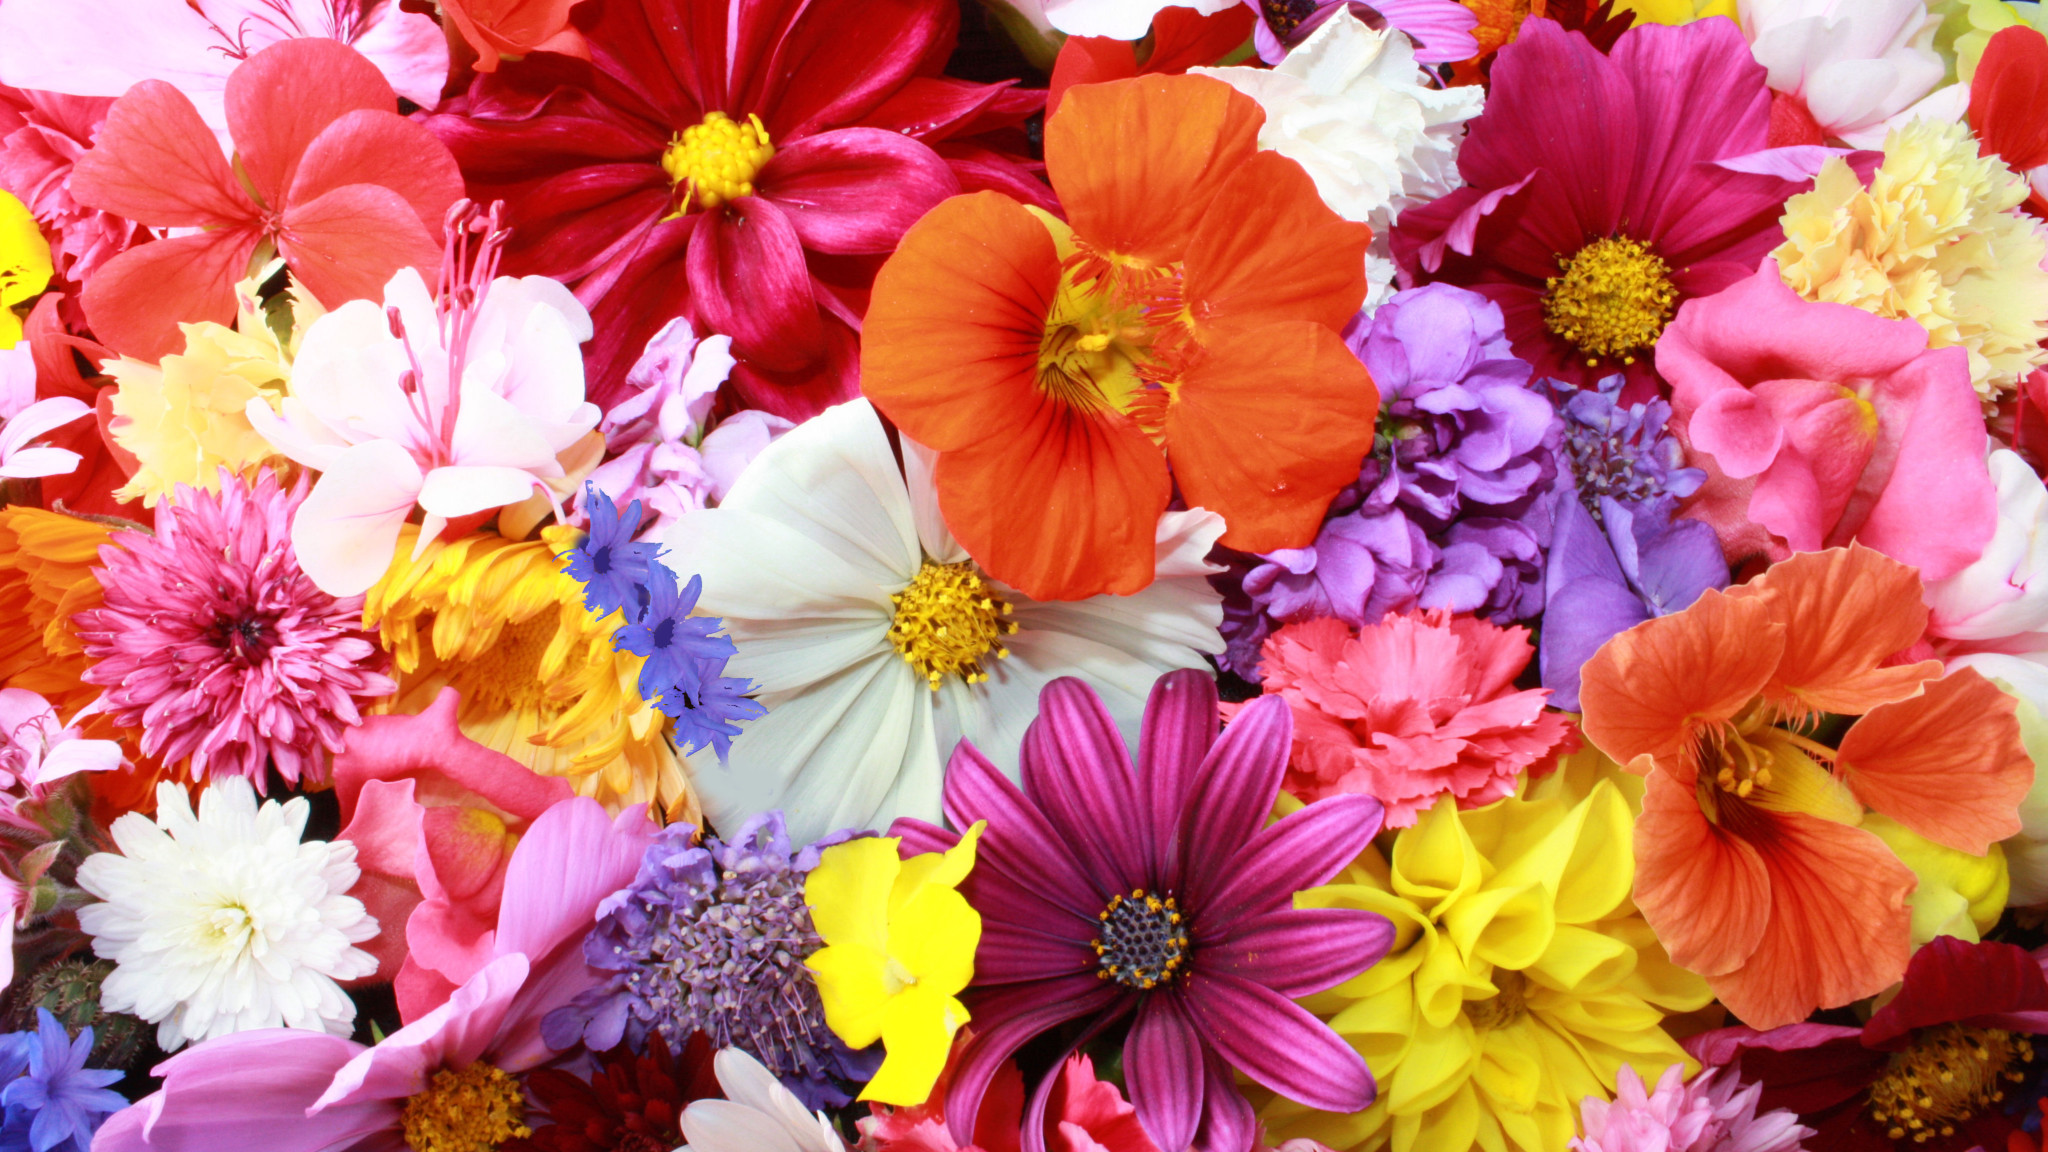 colorful flowers wallpaper,flower,petal,cut flowers,floral design,plant